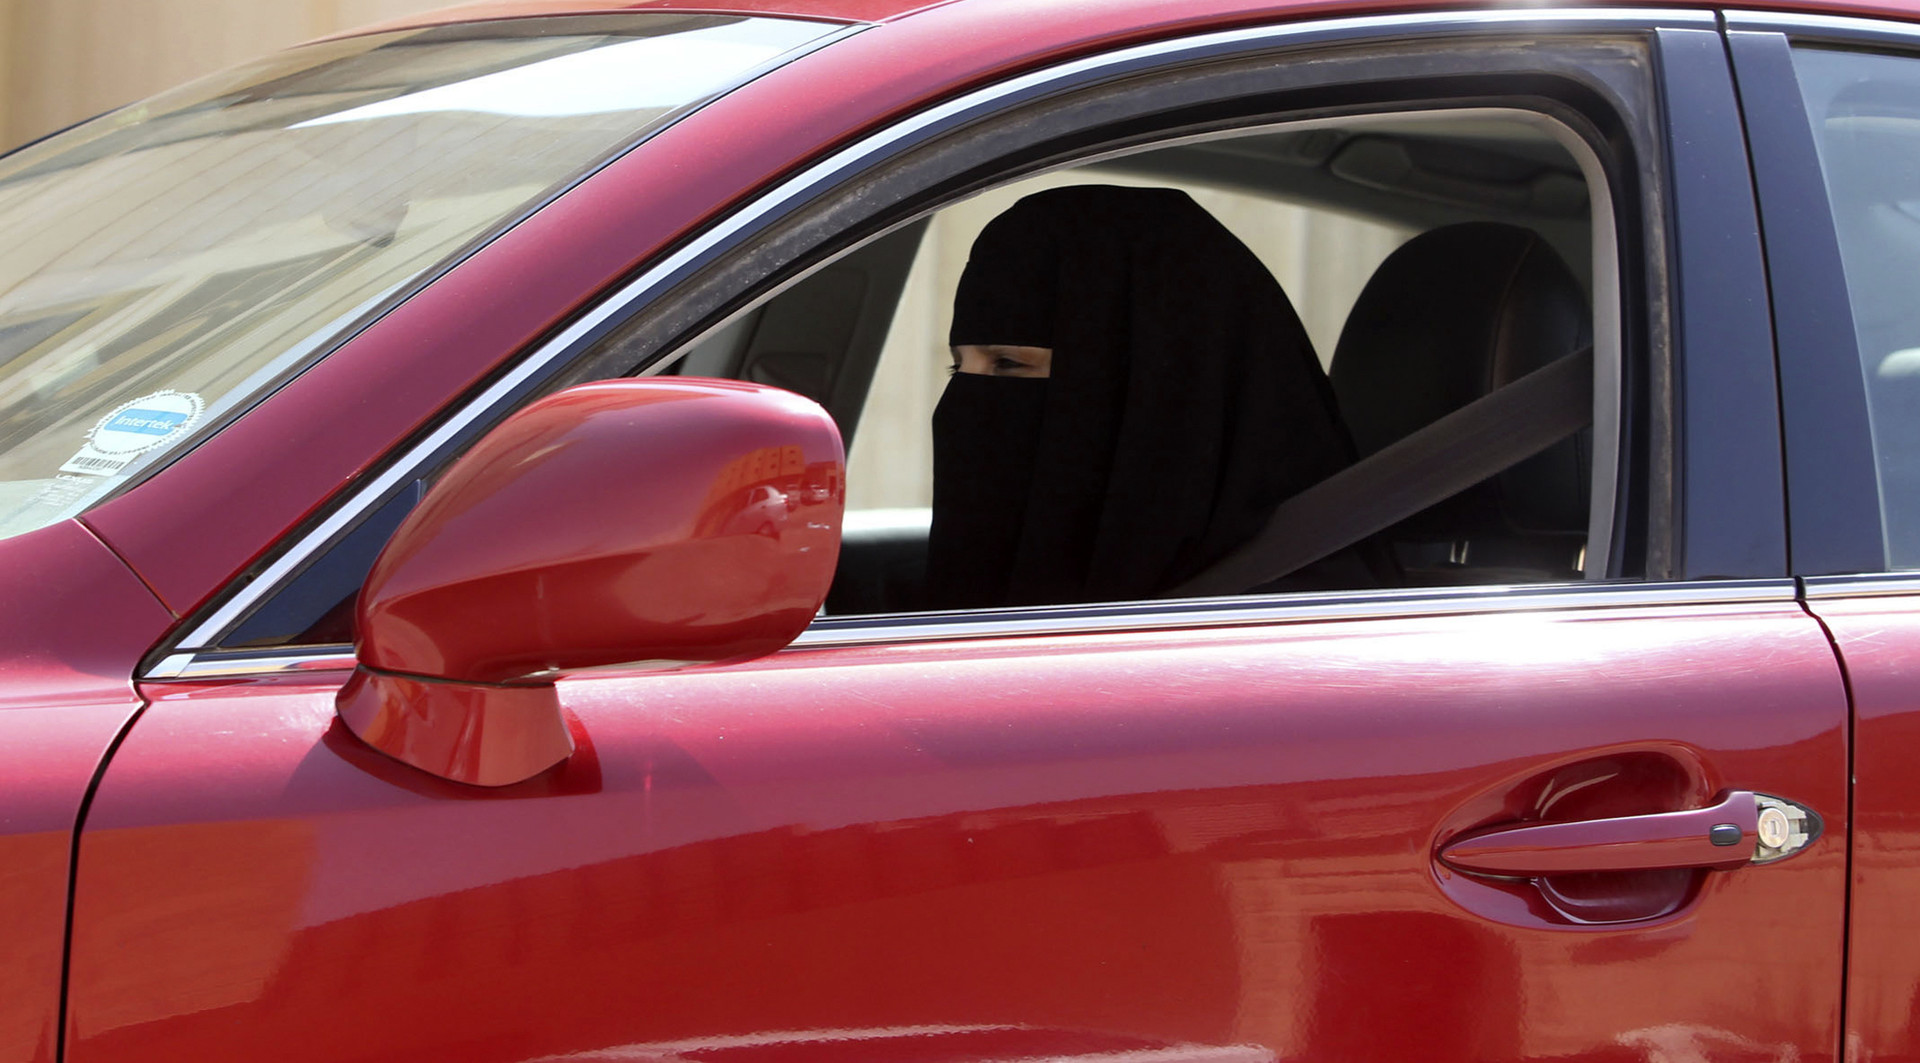 Arabie saoudite : selon le grand mufti, les femmes s'exposeraient au diable si elles conduisaient